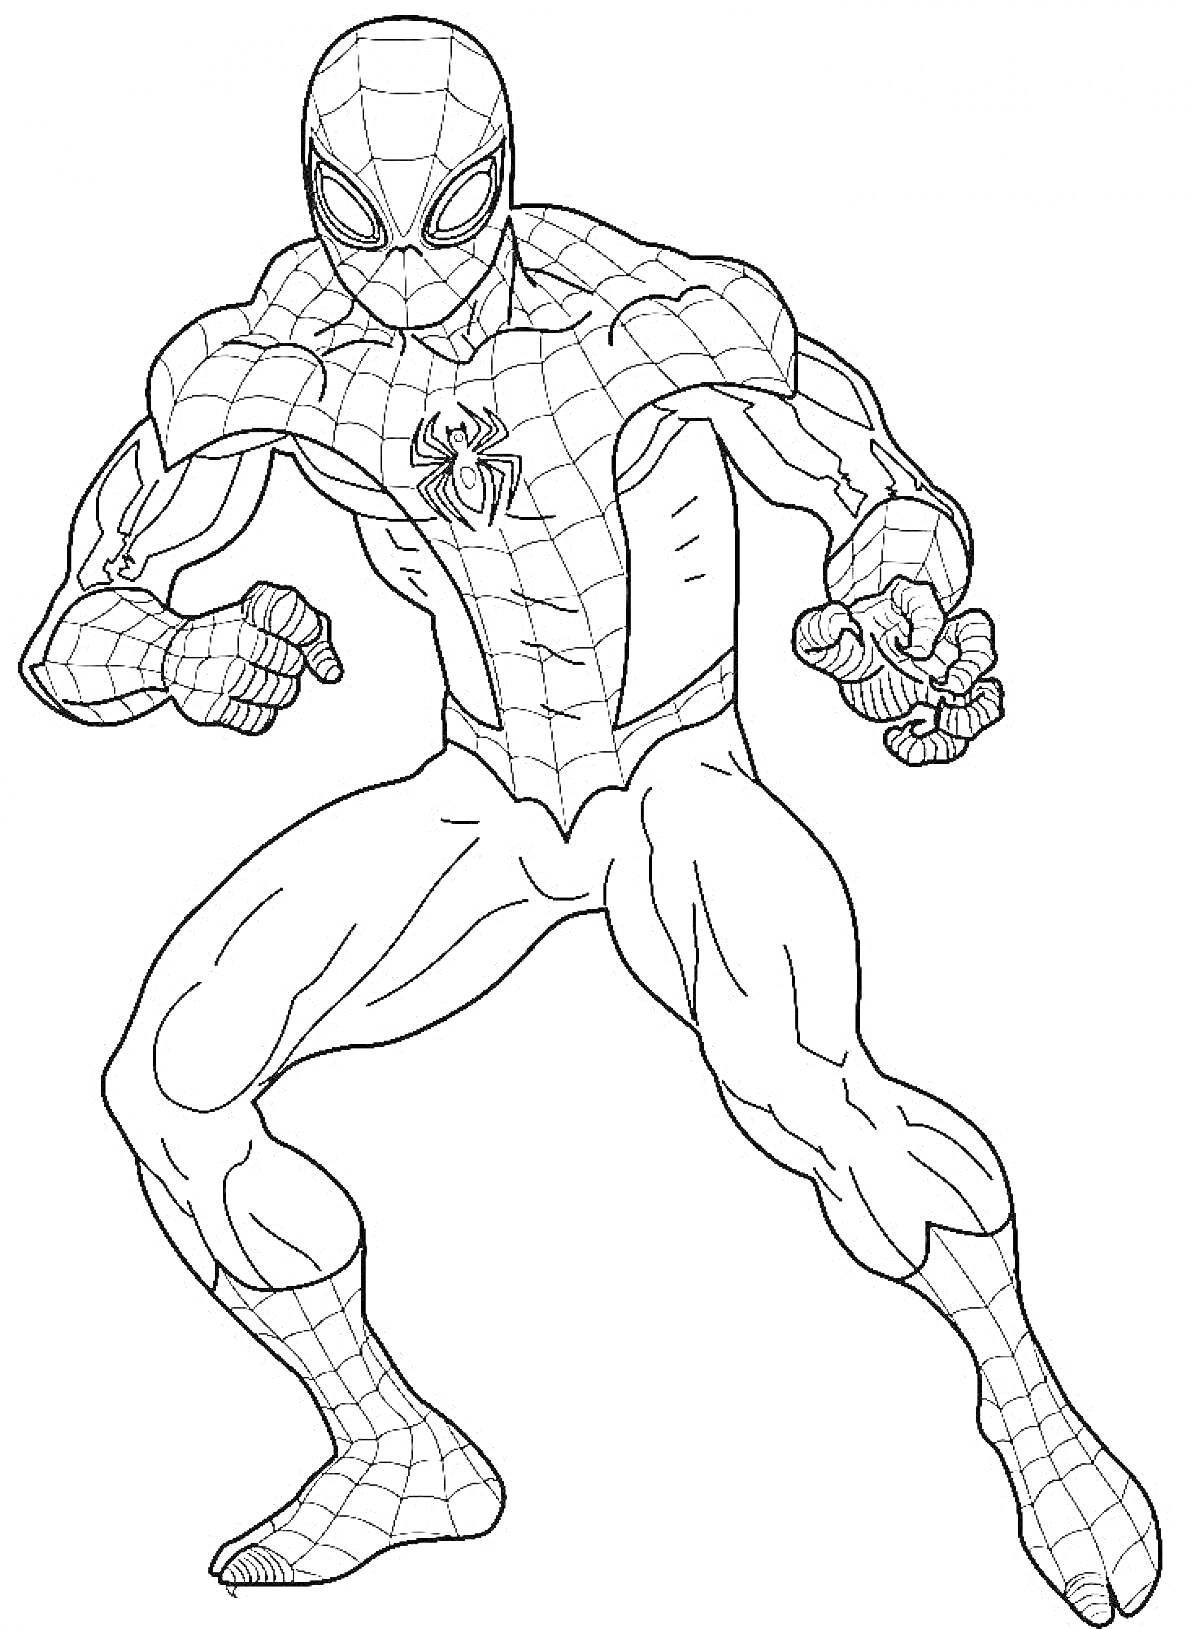 Раскраска Человек-паук в боевой стойке